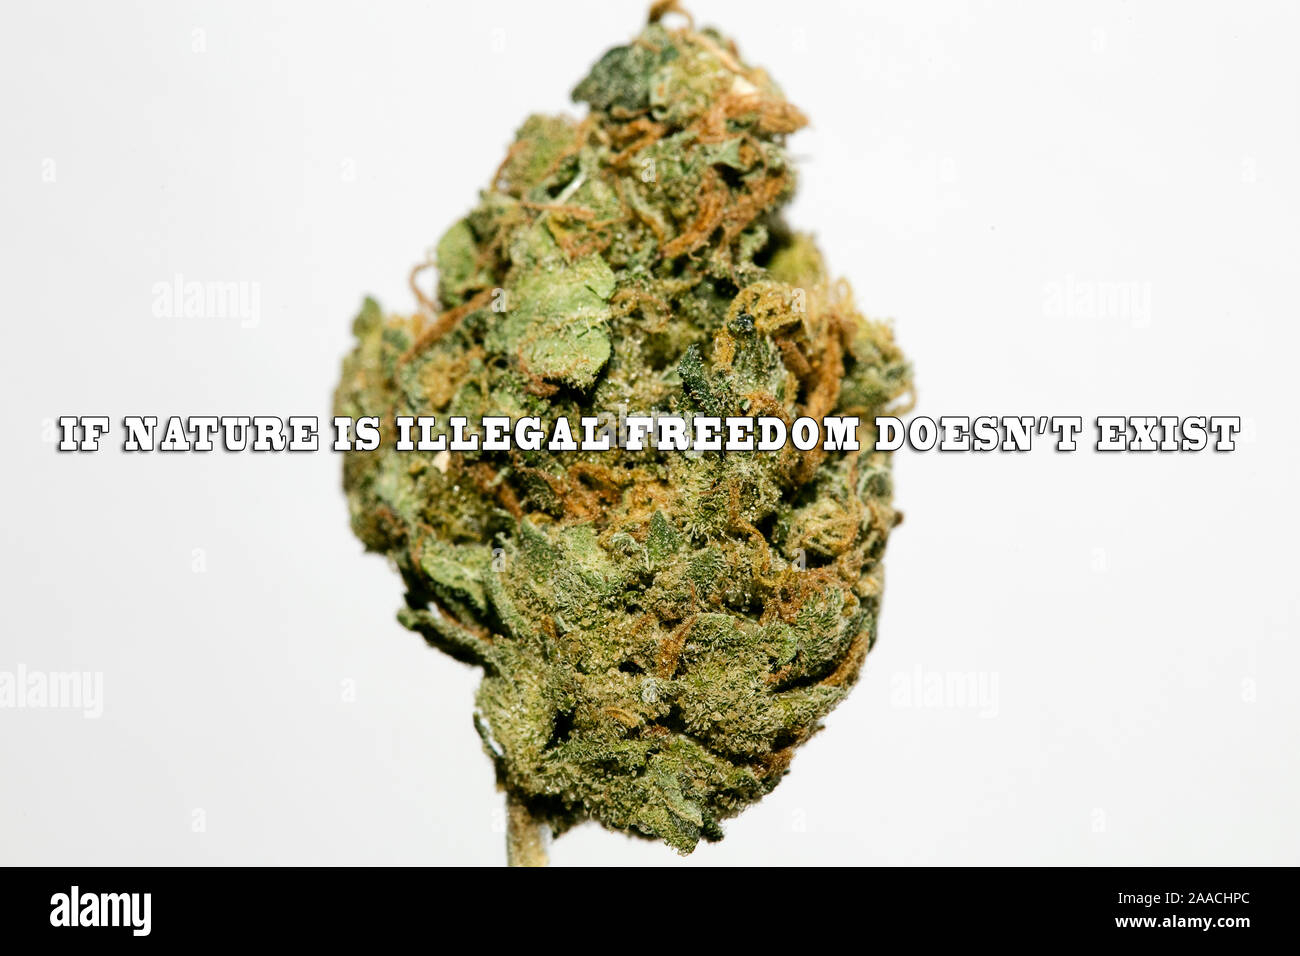 Texte citation sur le cannabis avec Super Lemon Haze bud cinquante macro mégapixels Banque D'Images